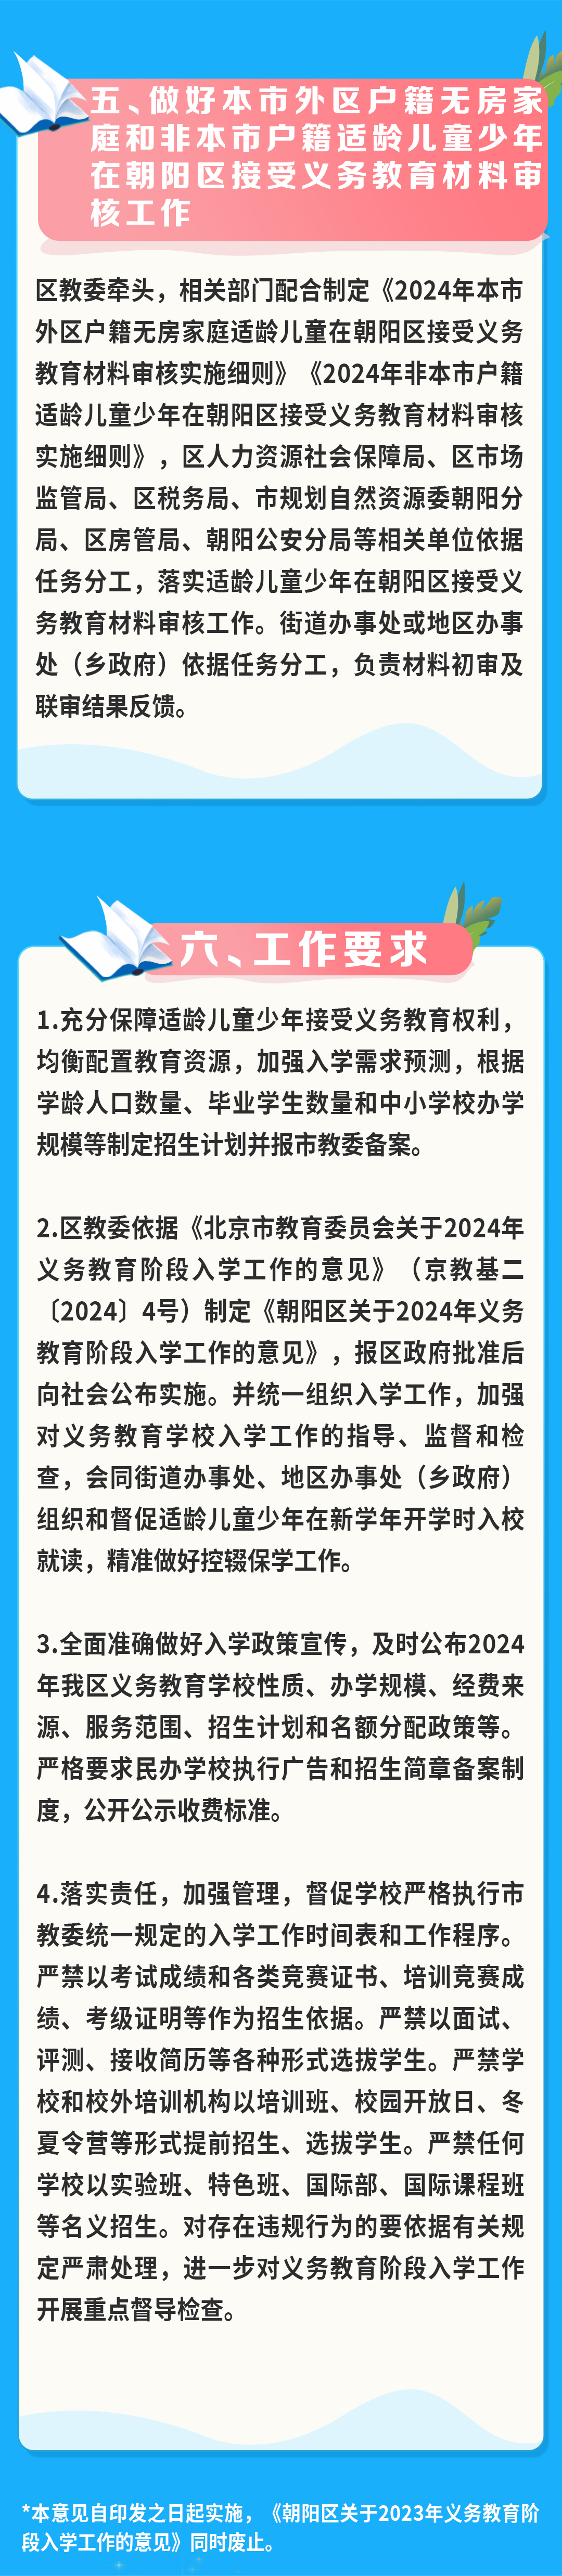 北京朝阳区2024年义务教育阶段入学工作的实施意见